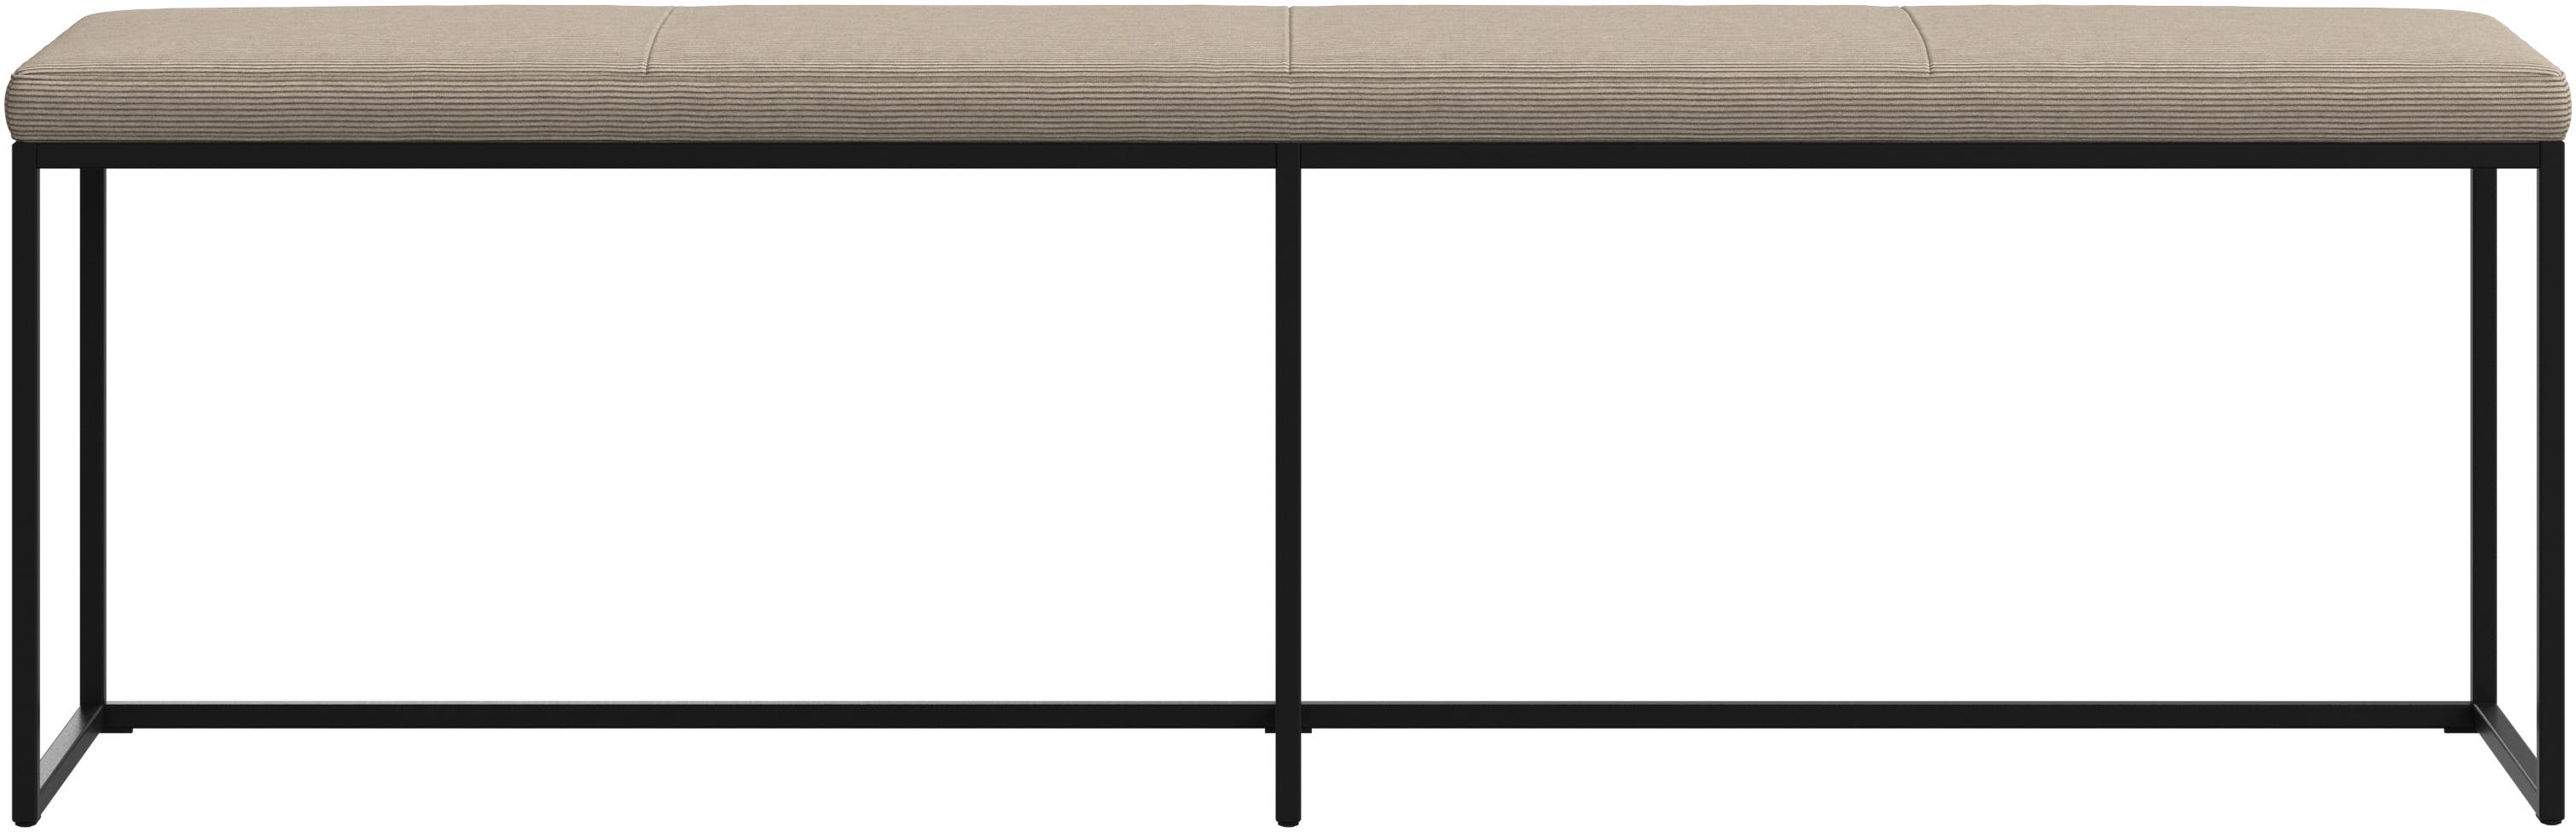 デザイナーベンチ | デンマークデザインの家具 | ボーコンセプト